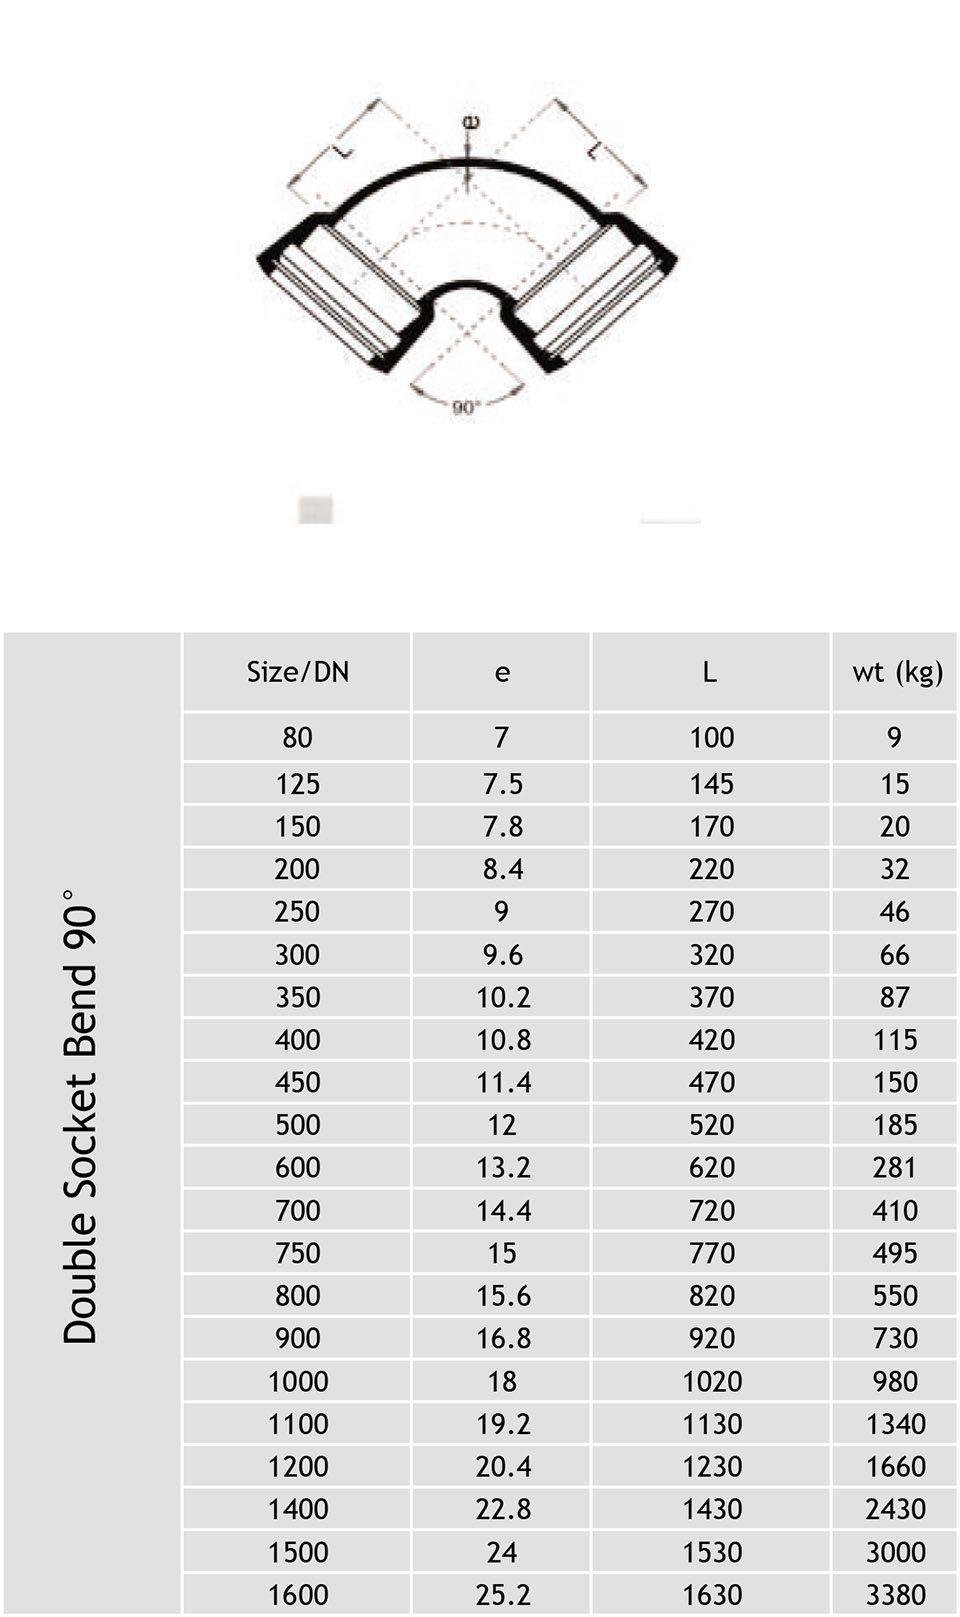 Bảng thông số kỹ thuật của cút gang EE 90 độ - Hiệu Rashmi